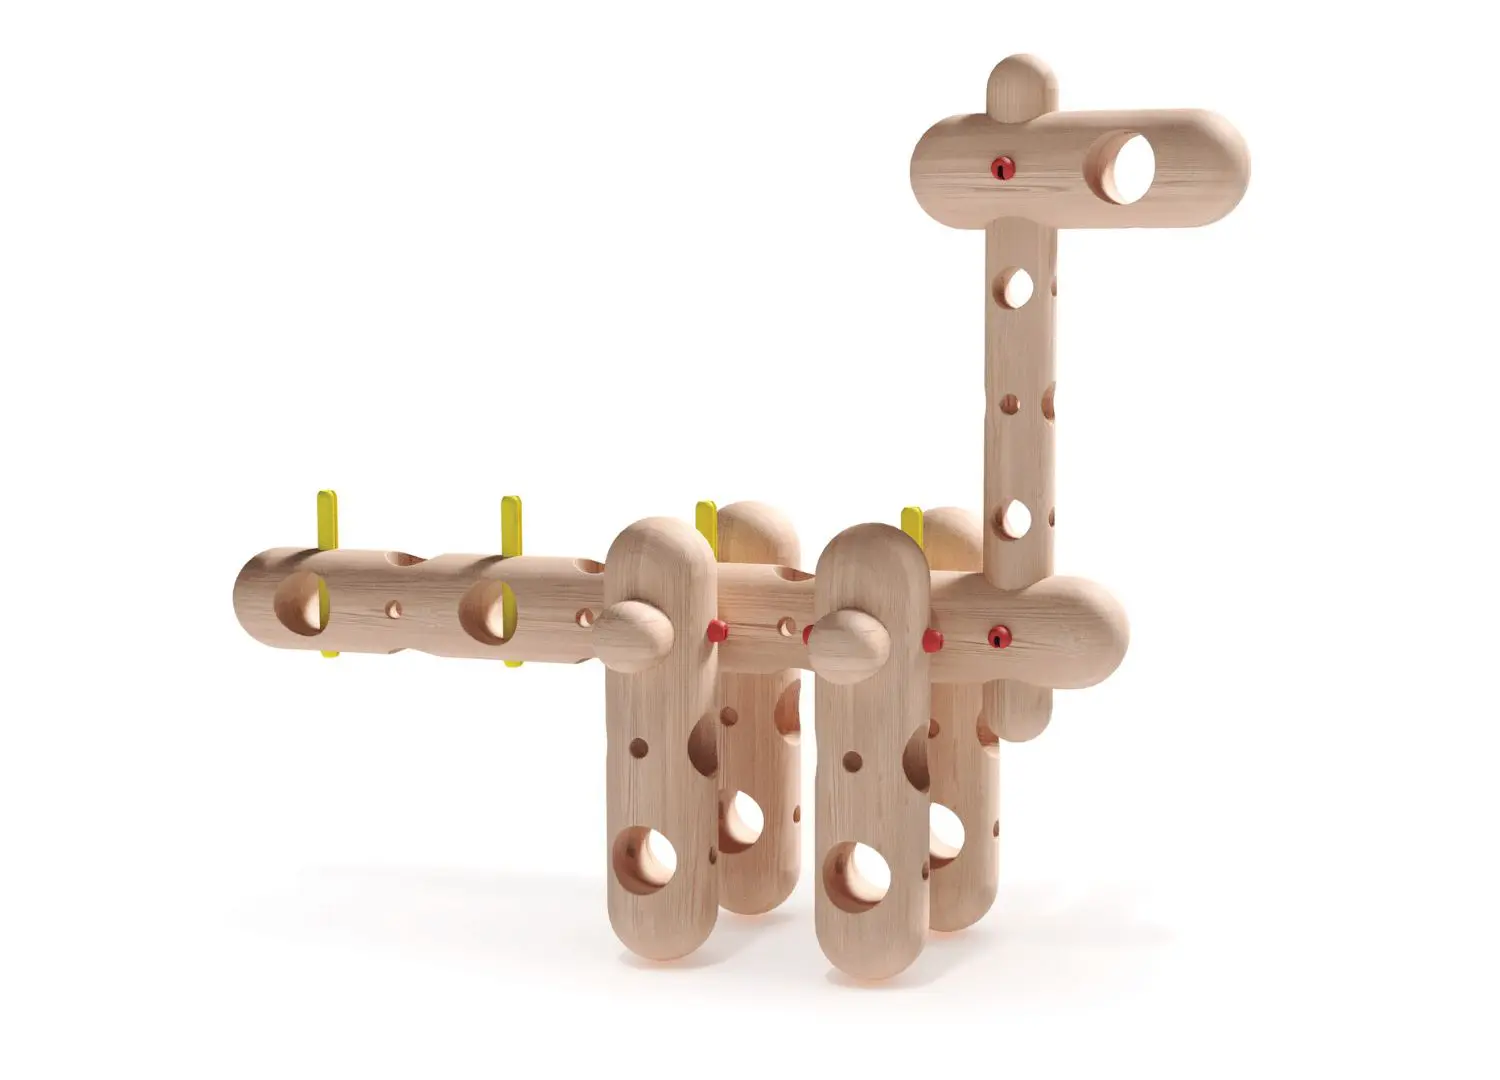 Zaver Dino by Konstrukta - Toys Design